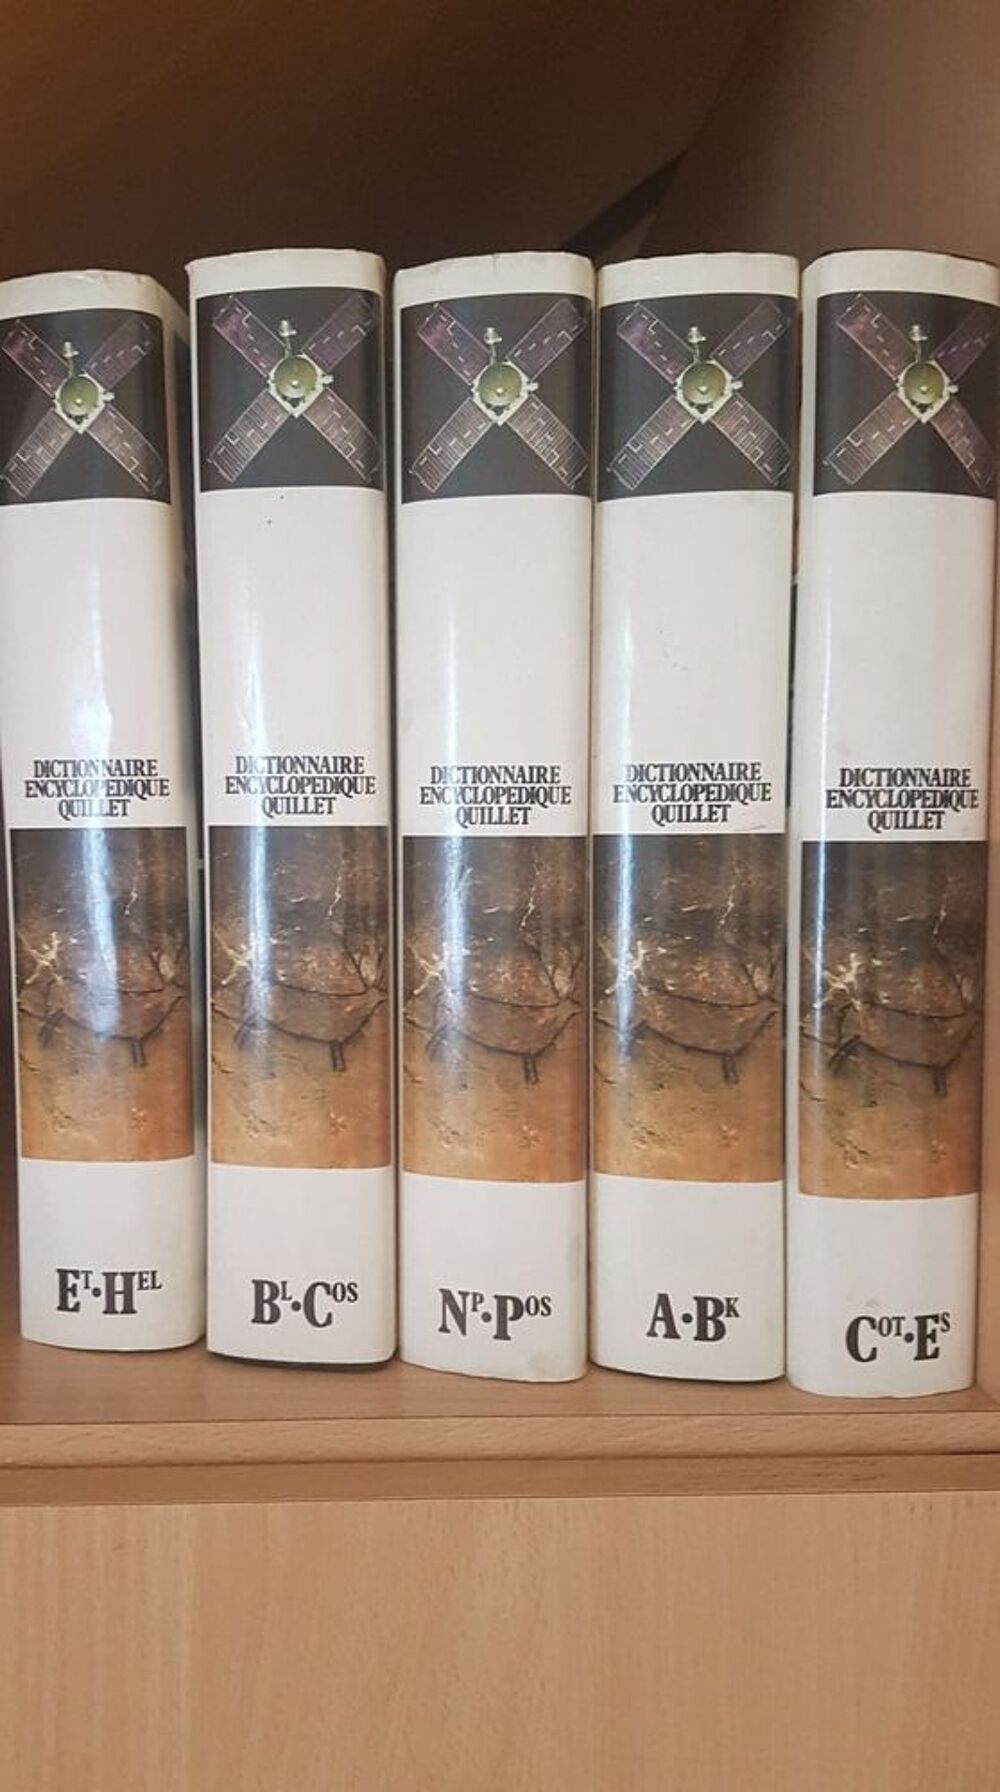 Dictionnaire Encyclop&eacute;die Quillet Livres et BD